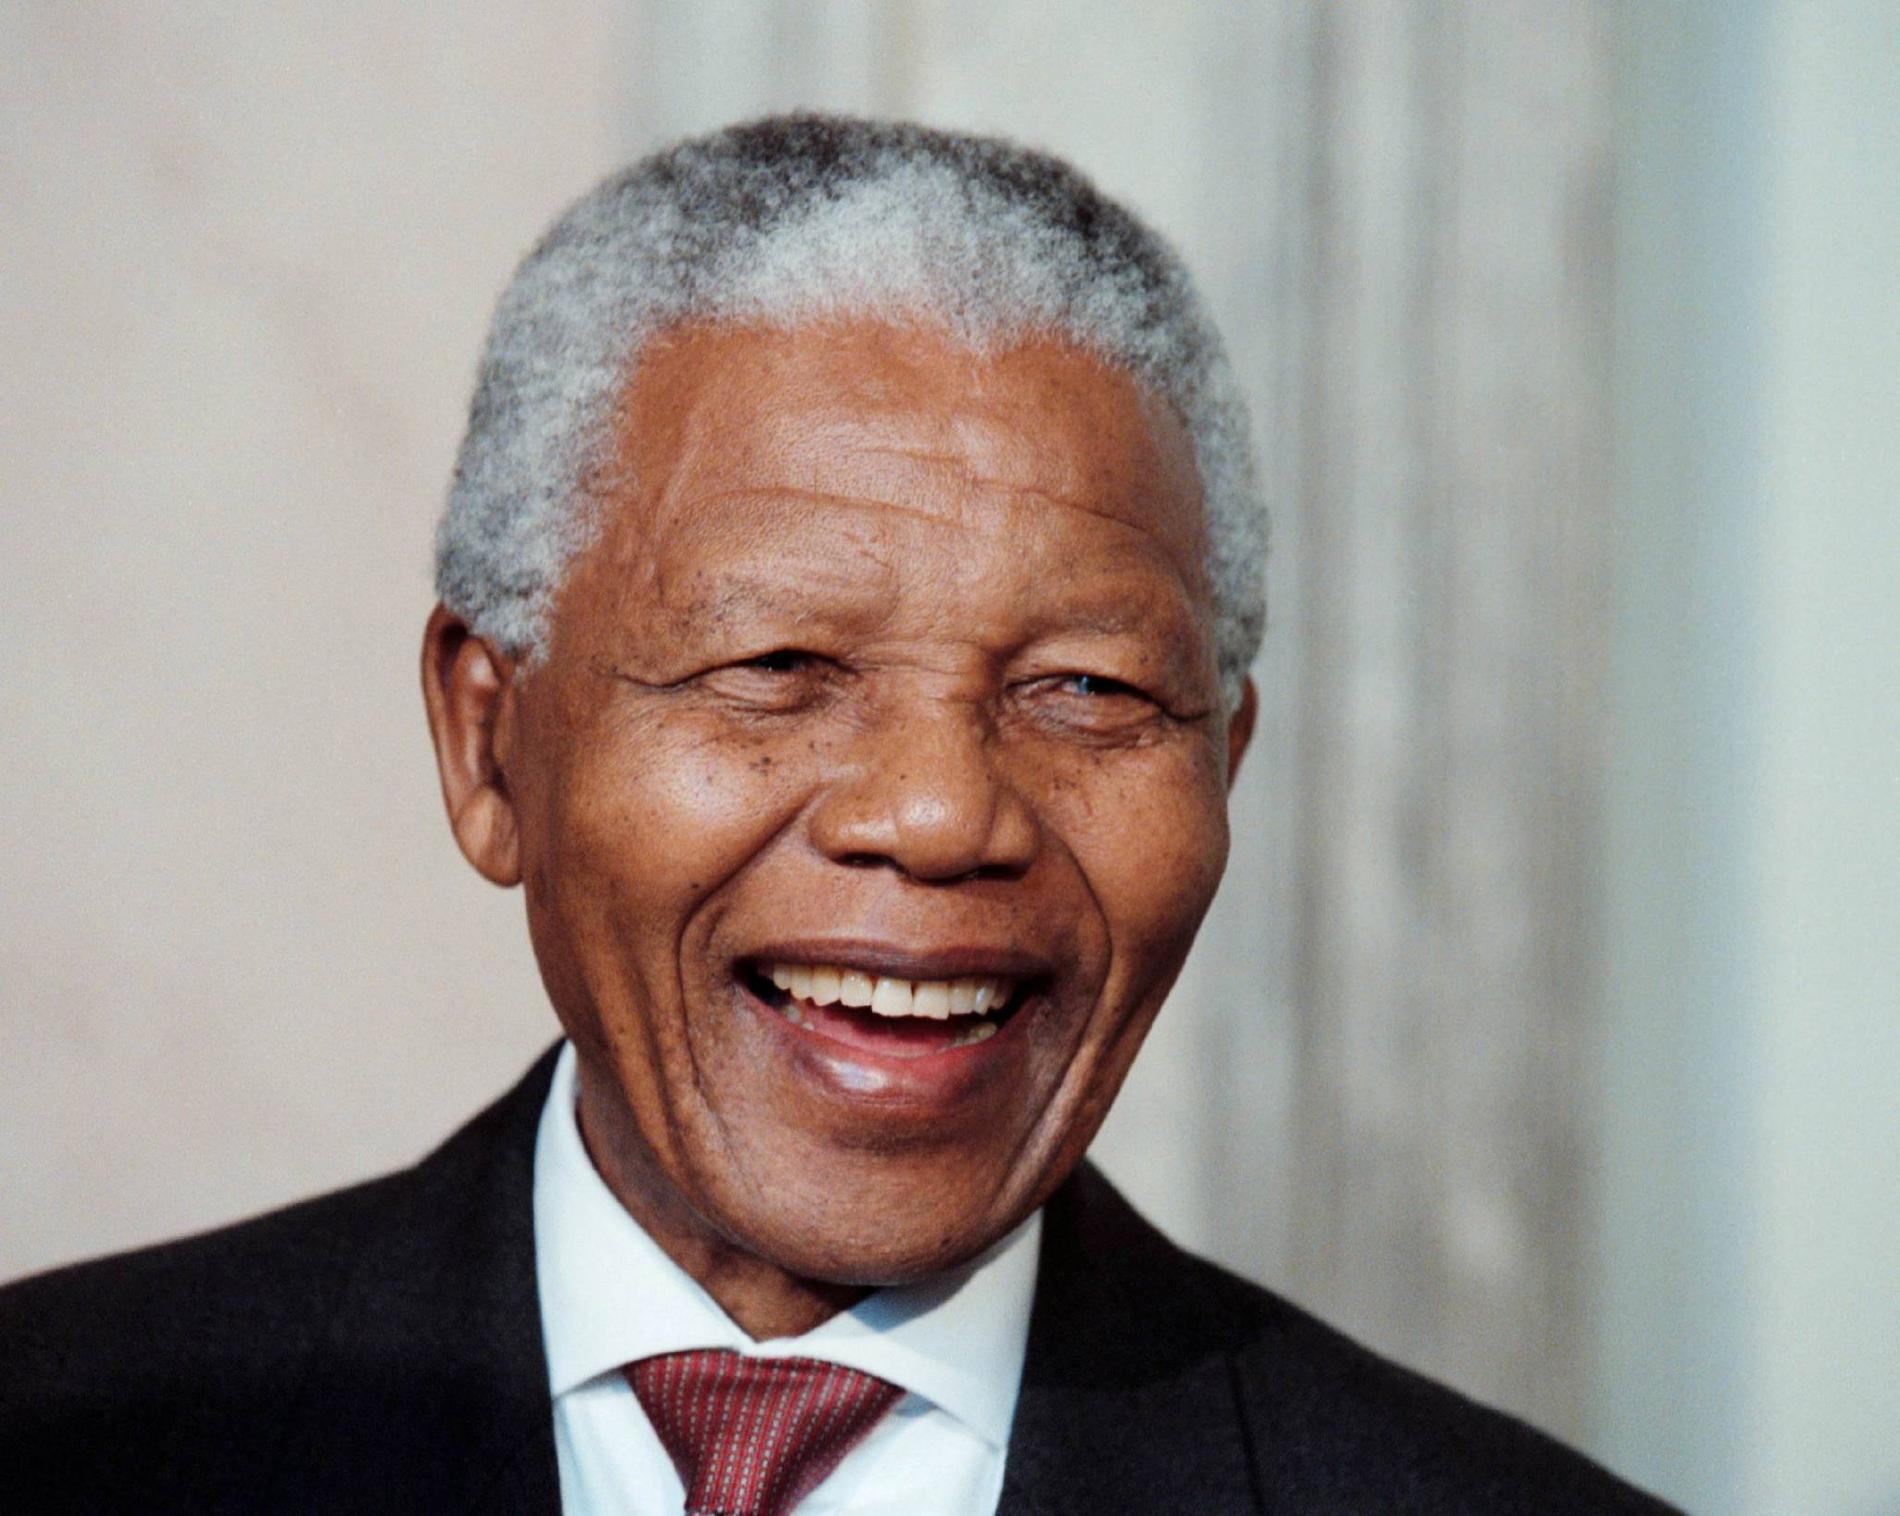 Den sydafrikanske ANC-ledaren och medborgarrättskämpen Nelson Mandela tillträdde sitt som president i april 1994. 1964 dömdes han till livstids fängelse men frigavs 1990. 1993 erhöll han Nobels fredpris tillsammans med FW de Klerk, dåvarande preidenten i Sydafrika.